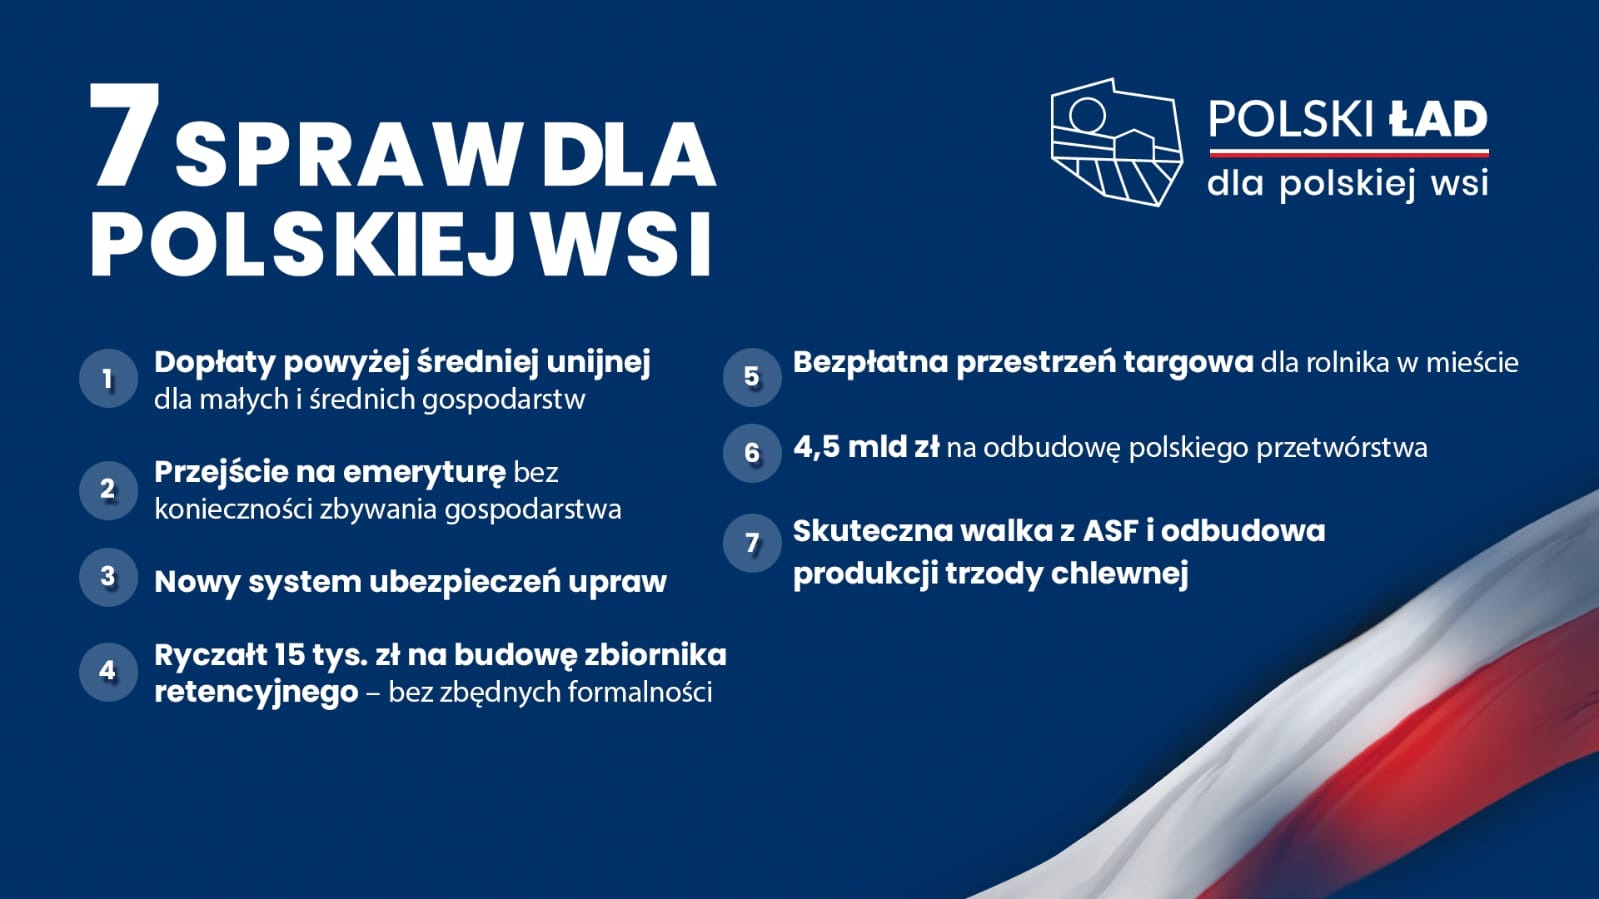 7 spraw dla polskiej wsi